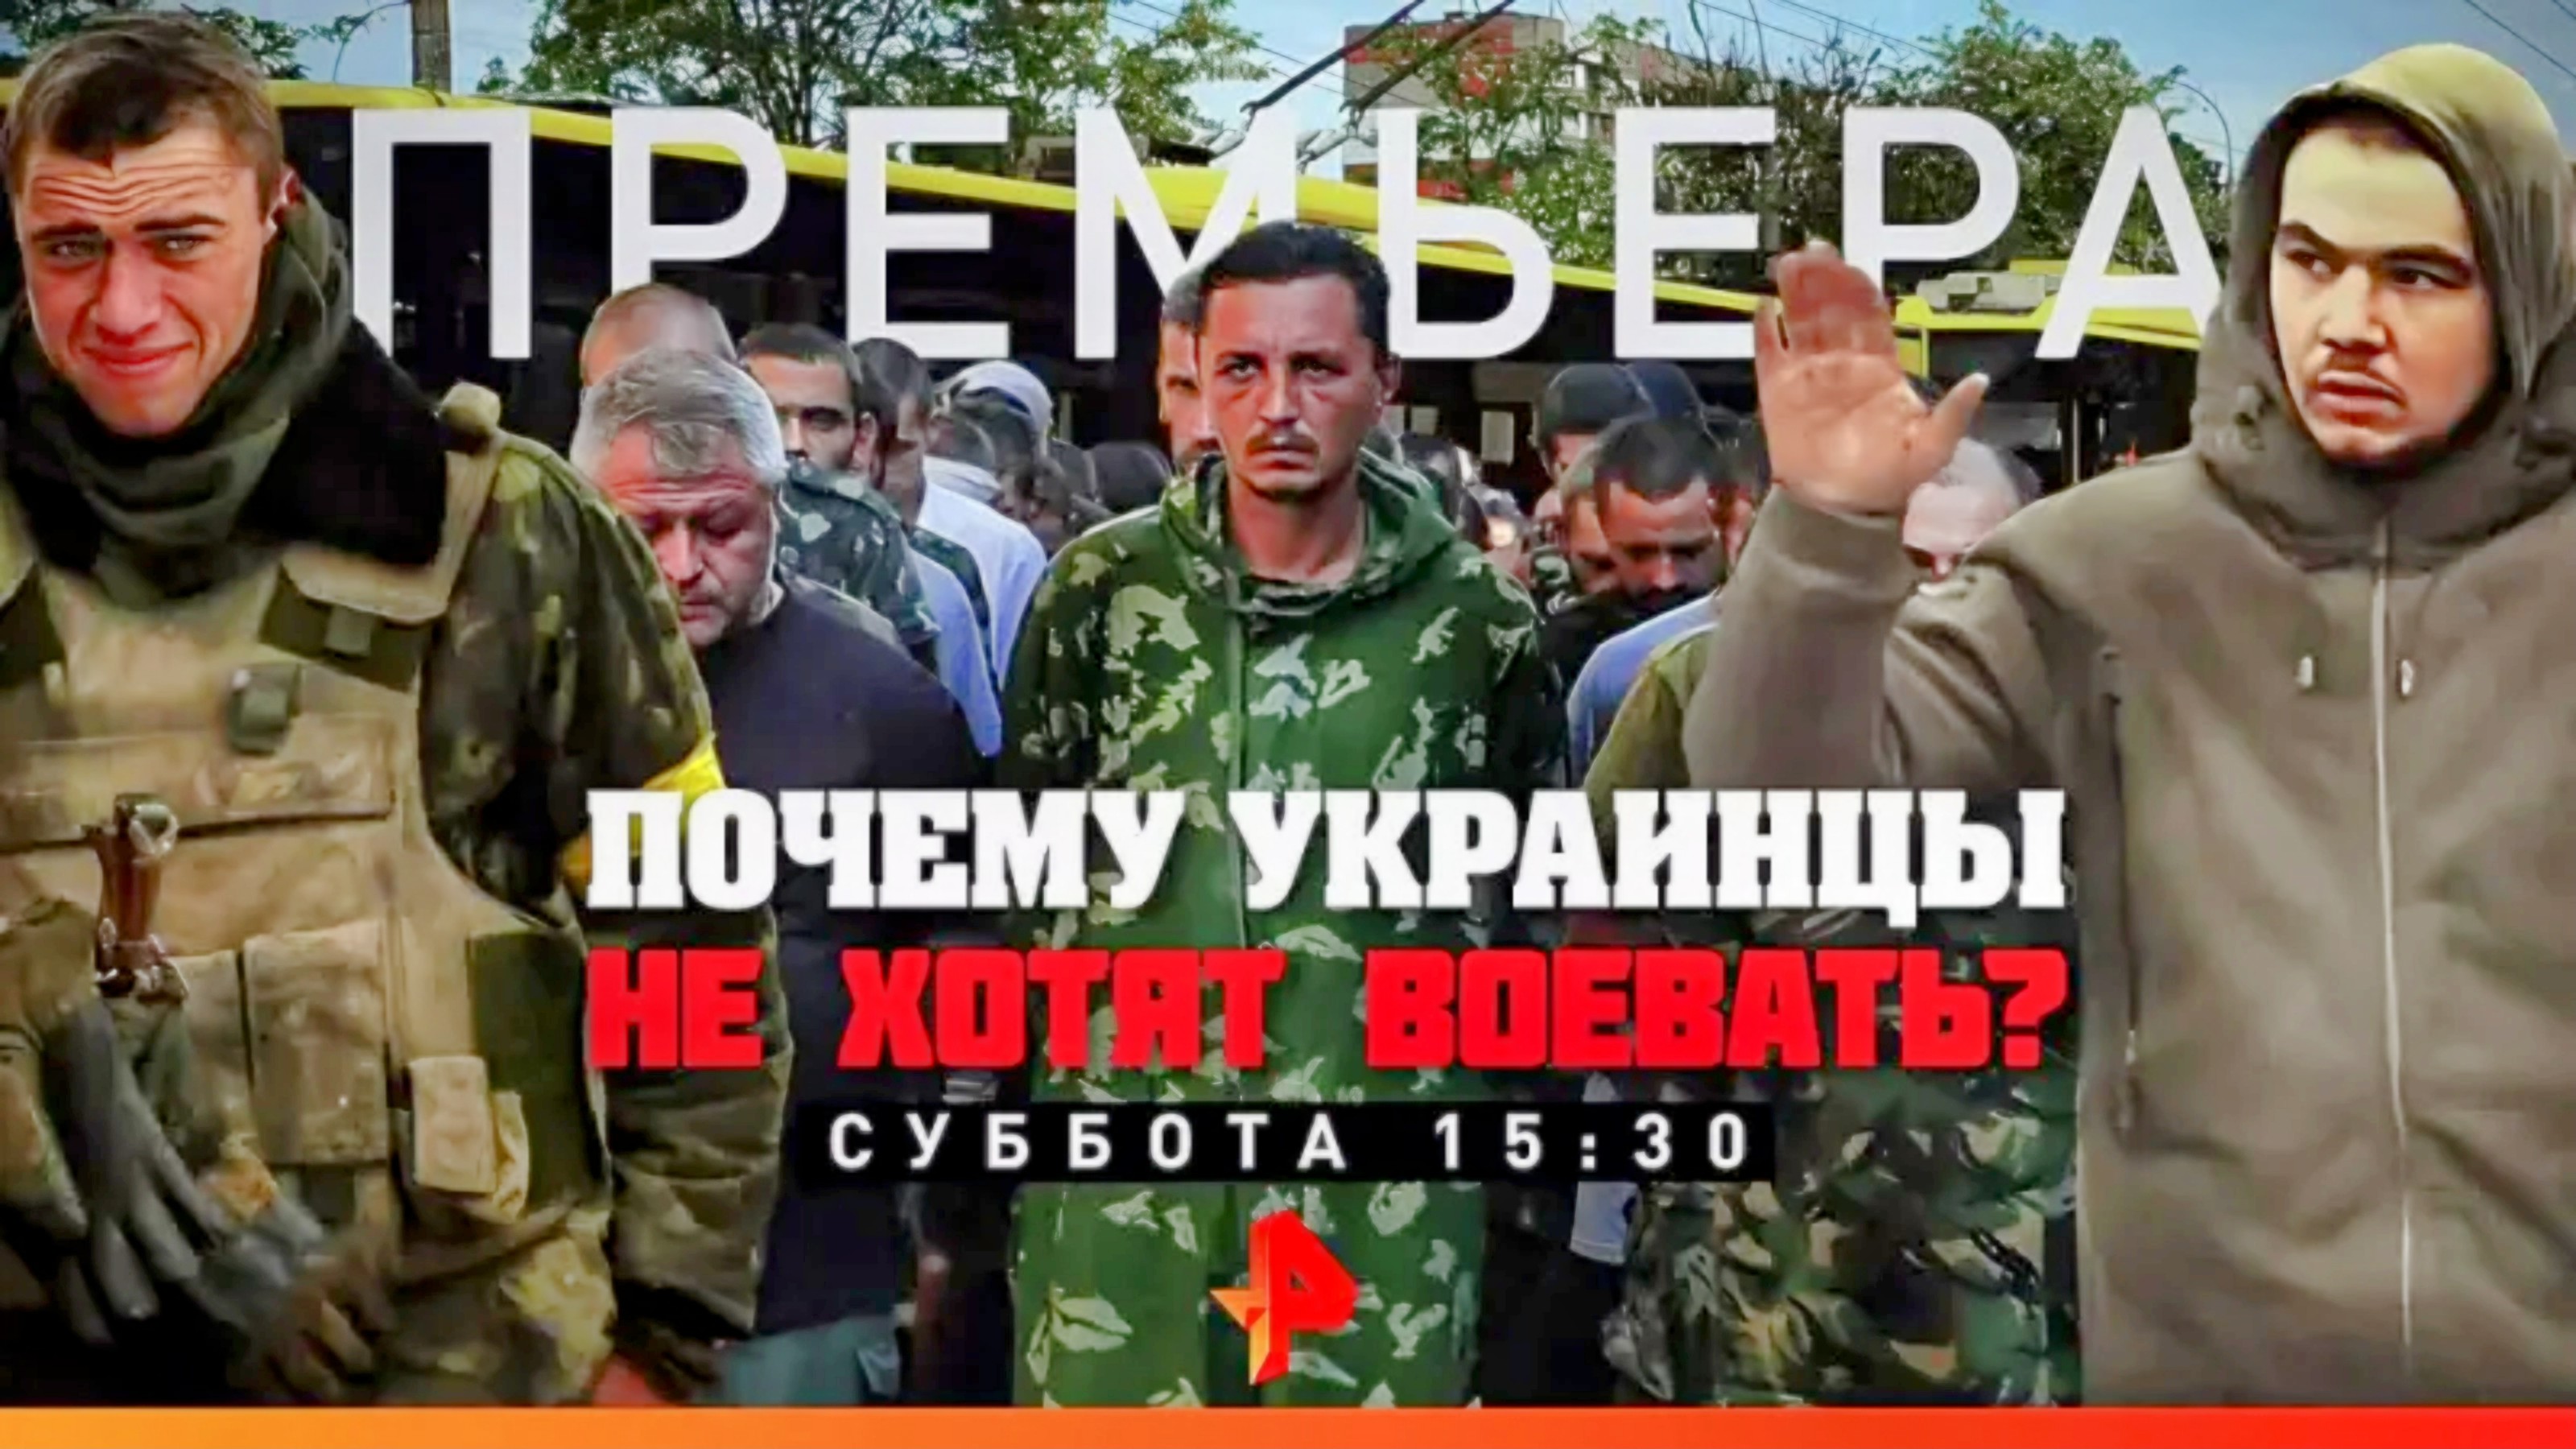 Анонс документального расследования "Почему Украинцы не хотят воевать?" (Рен ТВ, 16.06.2022)